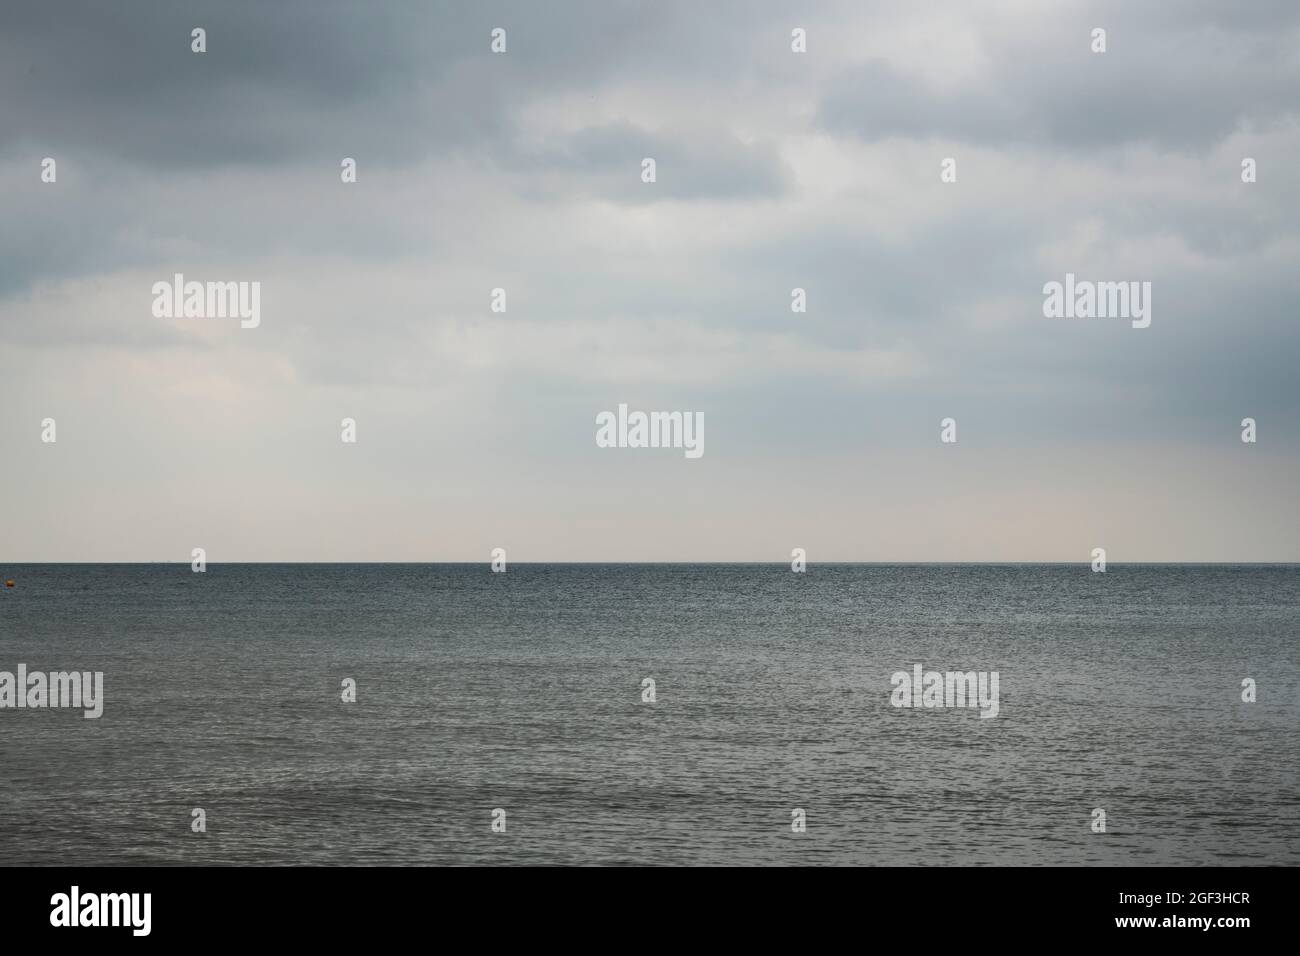 Moody Seacape with horizontal horizon Stock Photo